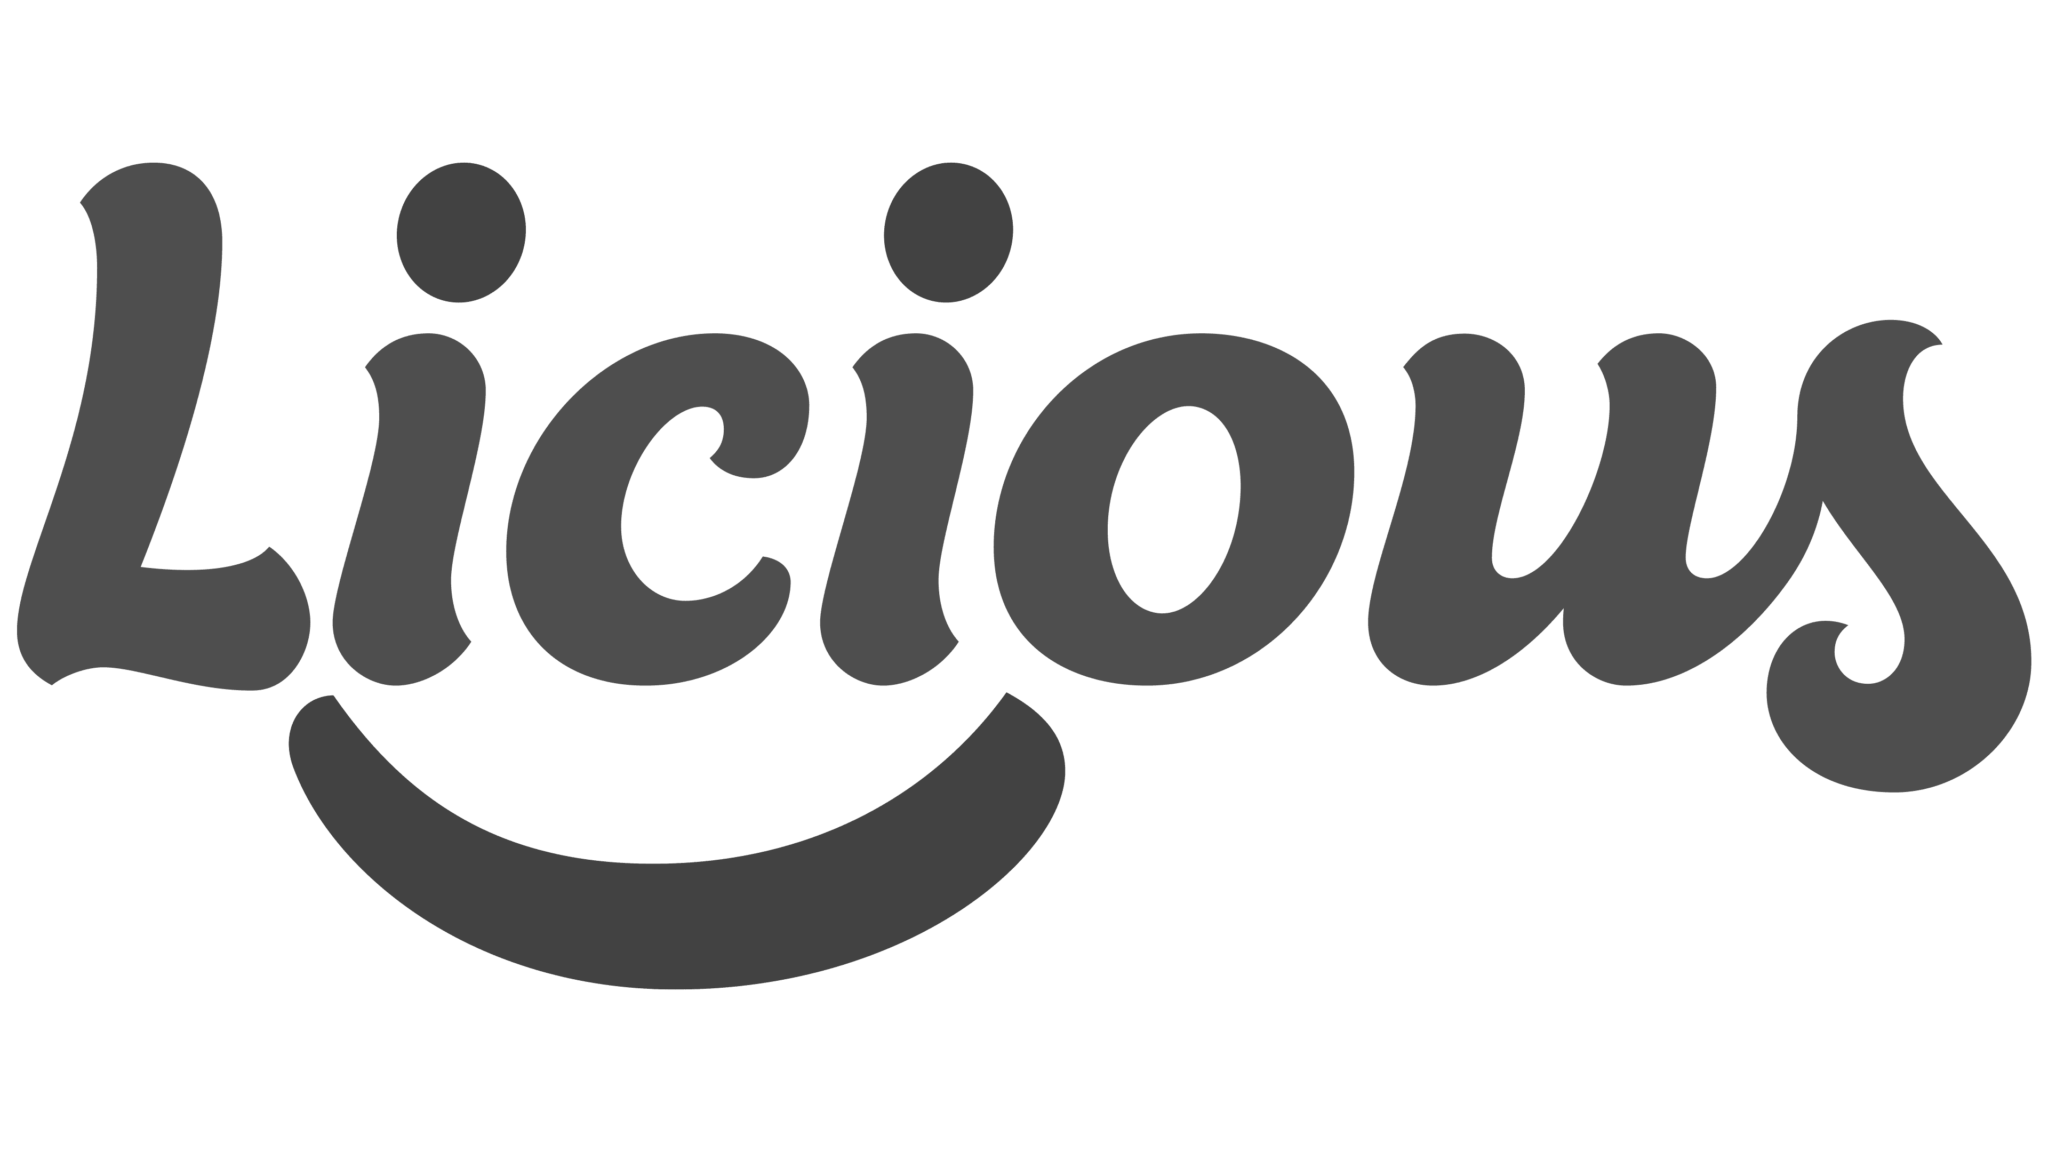 Licious-Logo-modified